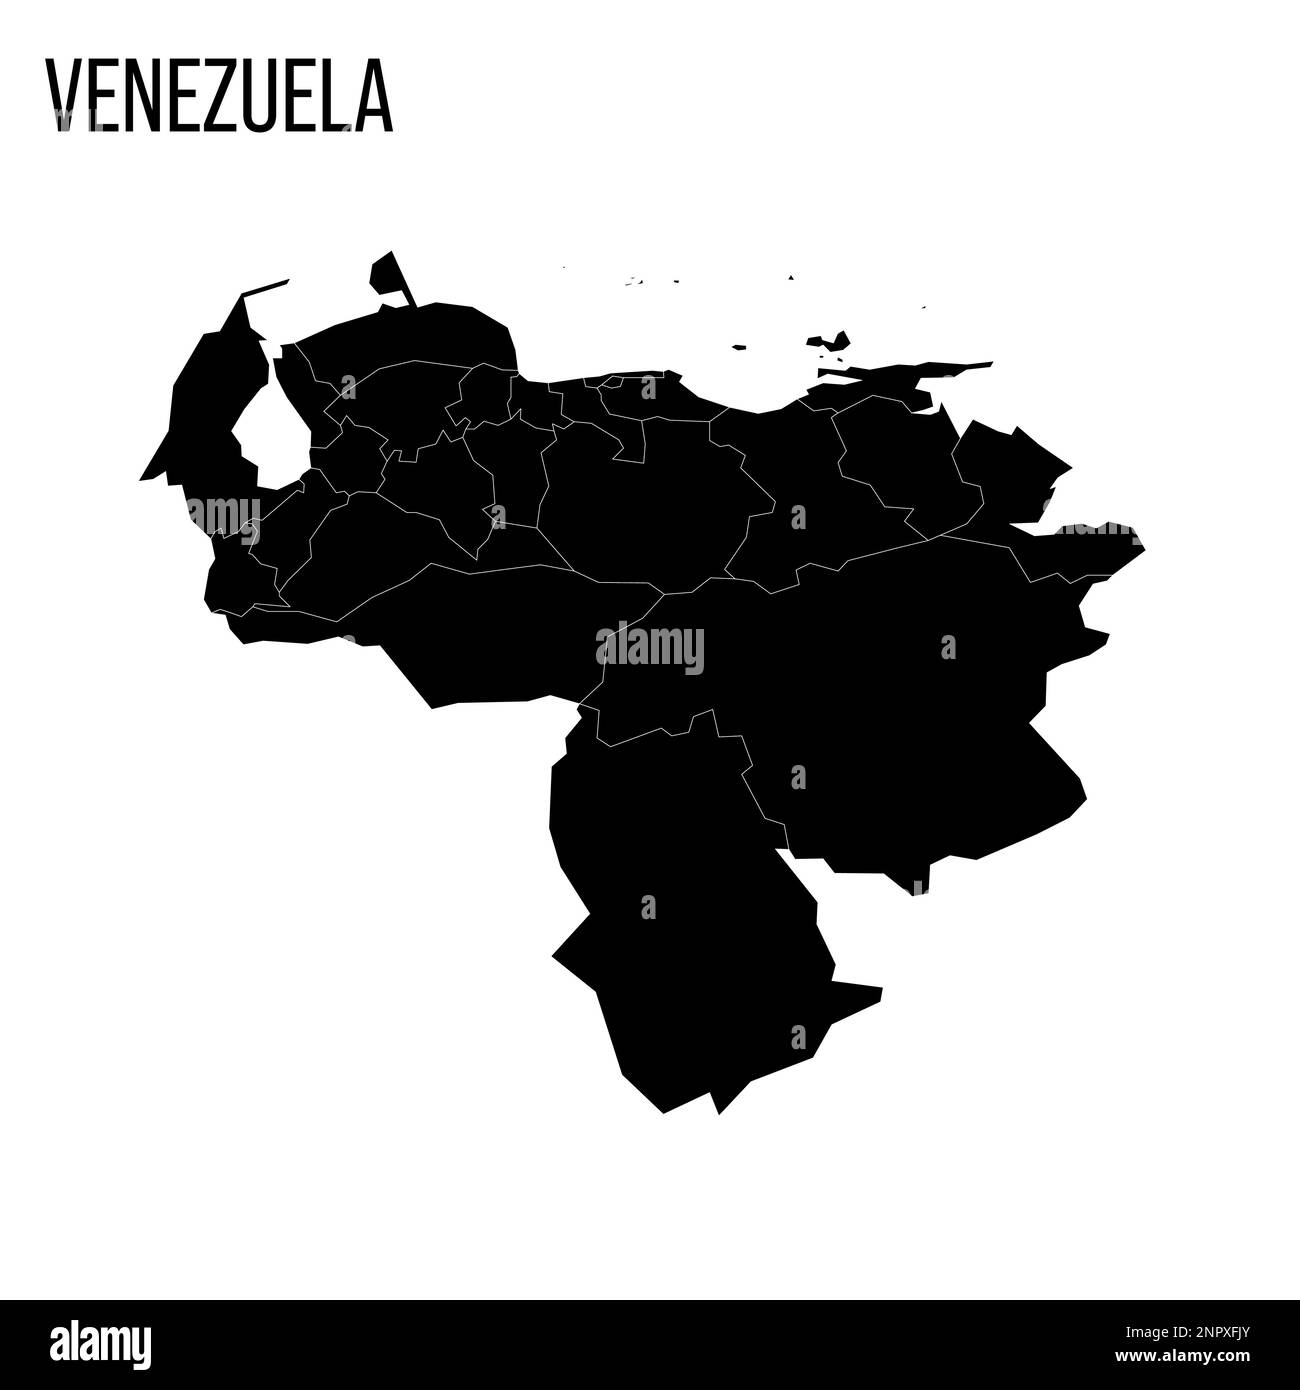 Venezuela mappa politica delle divisioni amministrative - stati, distretto della capitale e dipendenze federali. Mappa nera vuota e nome del paese. Illustrazione Vettoriale